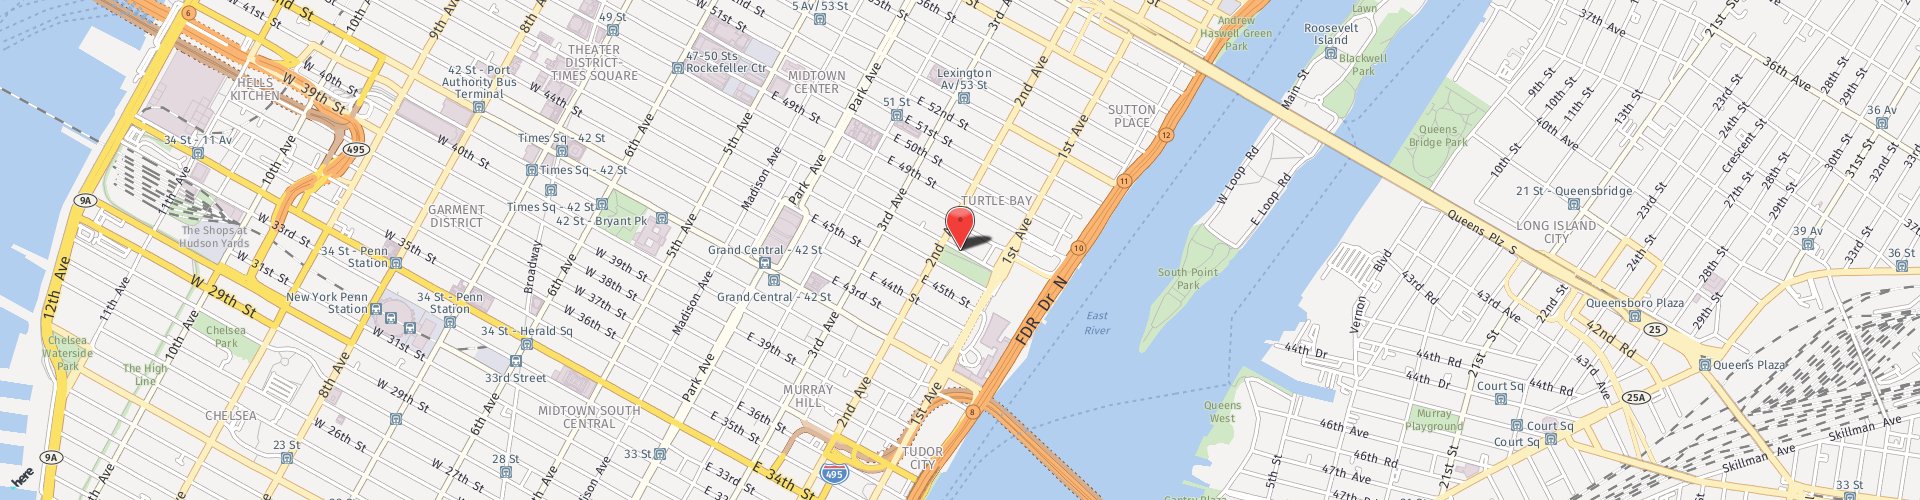 Location Map: 305 East 47th street New York, NY 10017